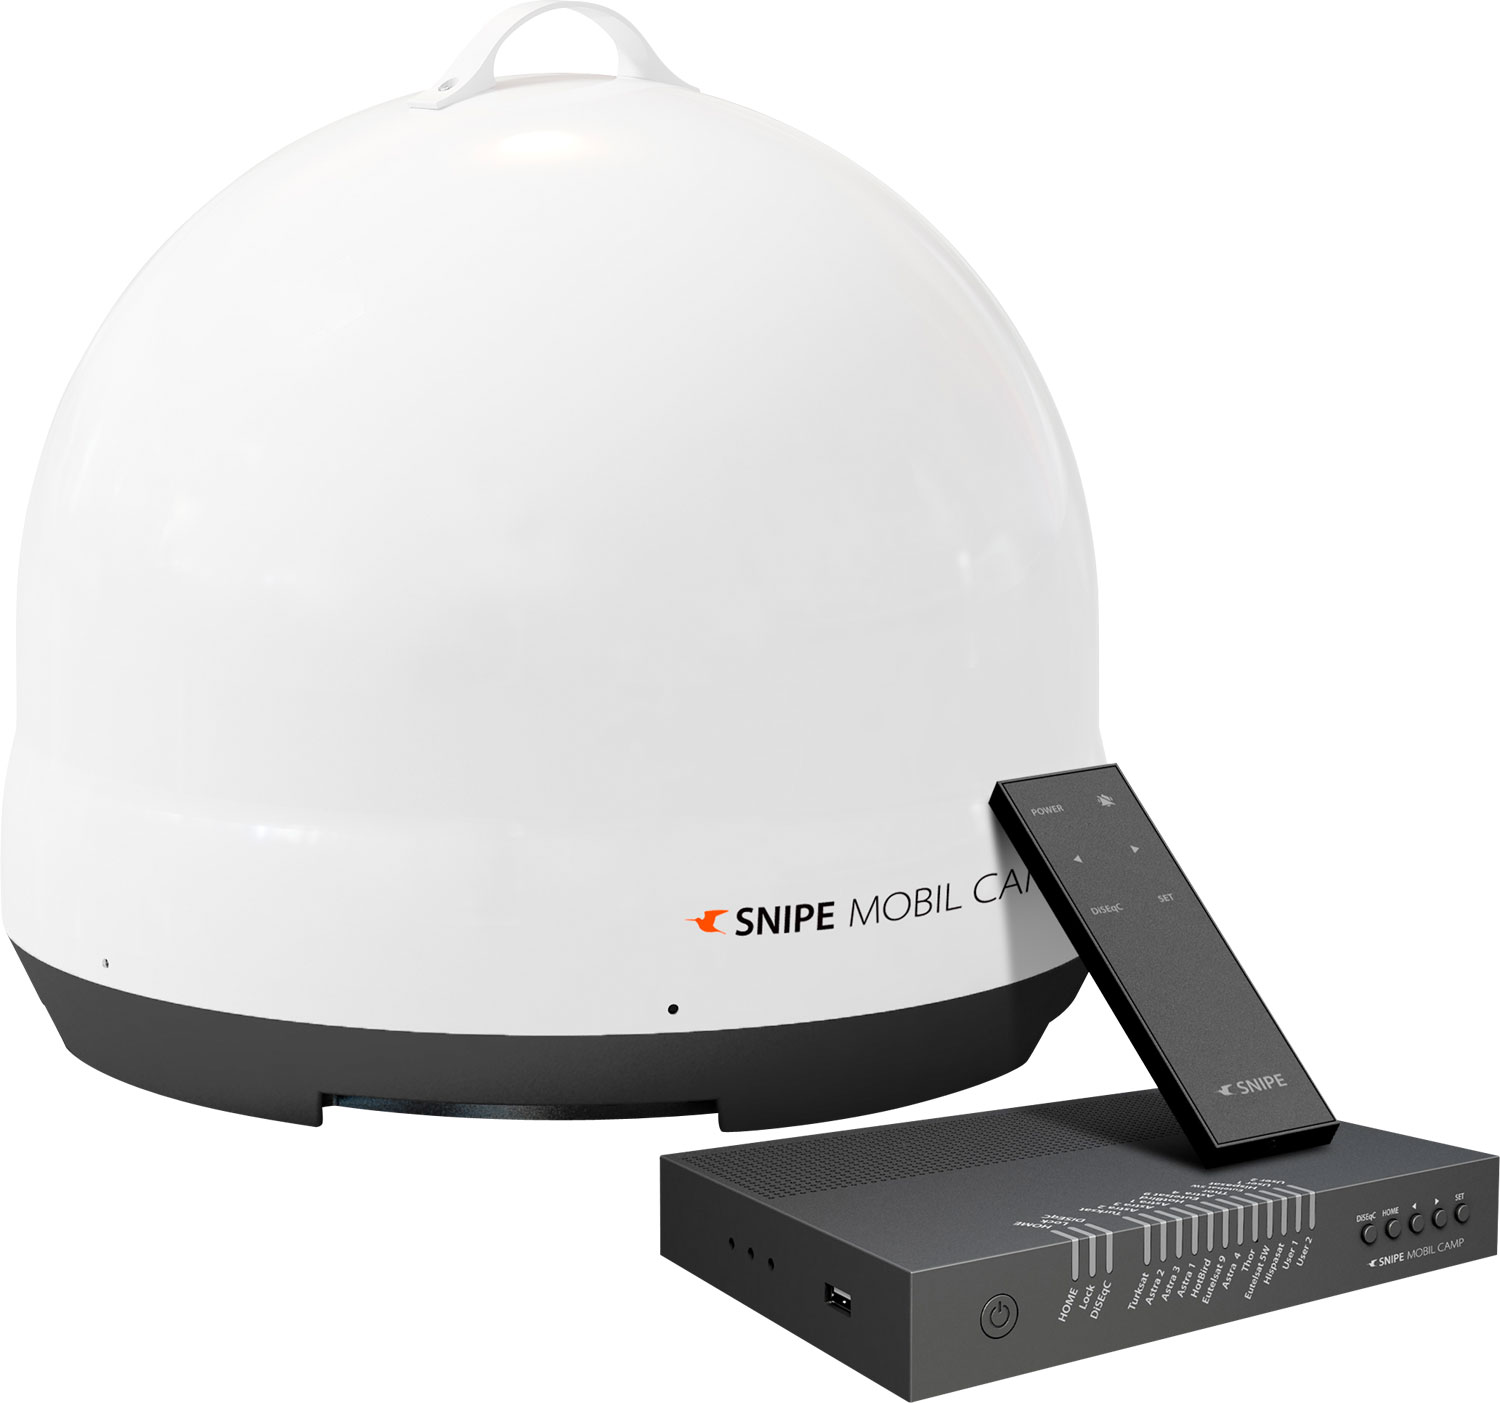 Selfsat Snipe Mobil Camp vollautomatische portable Sat-Antenne mit Fernbedienung Single LNB